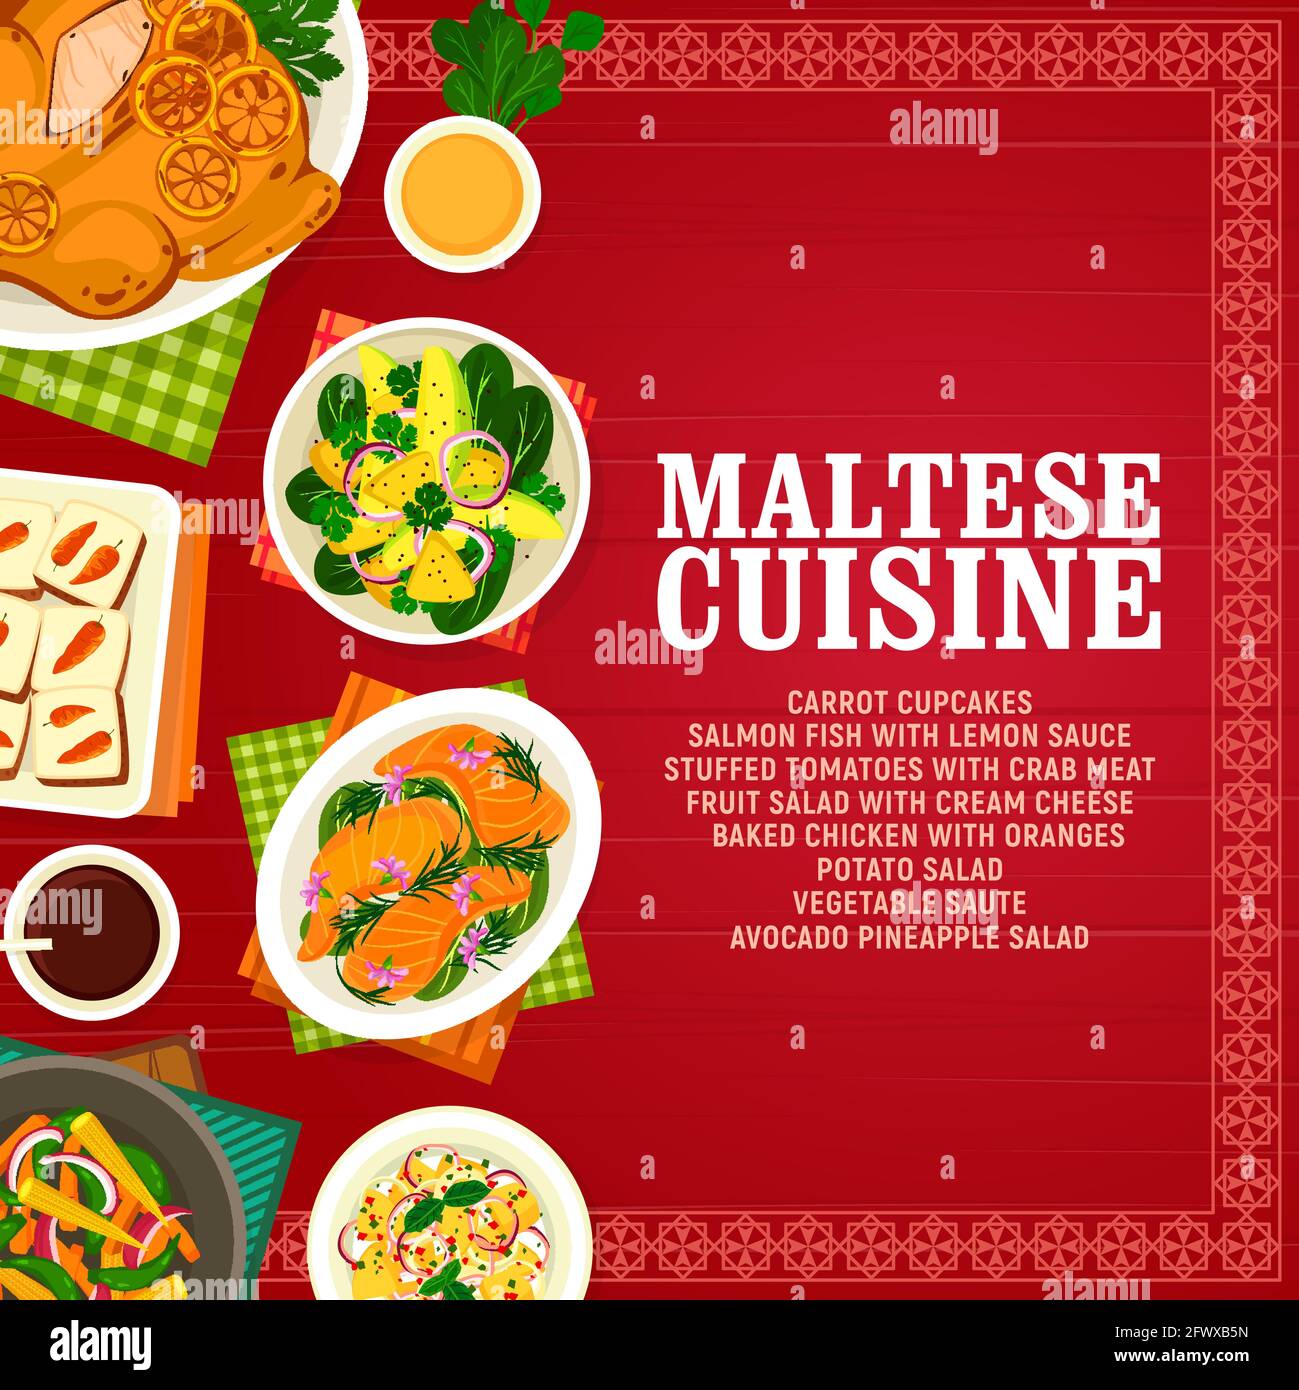 Cucina maltese cupcake di carote vettoriali, pesce di salmone con salsa al limone e pomodori ripieni con carne di granchio. Macedonia di frutta con formaggio cremoso, pollo al forno Illustrazione Vettoriale